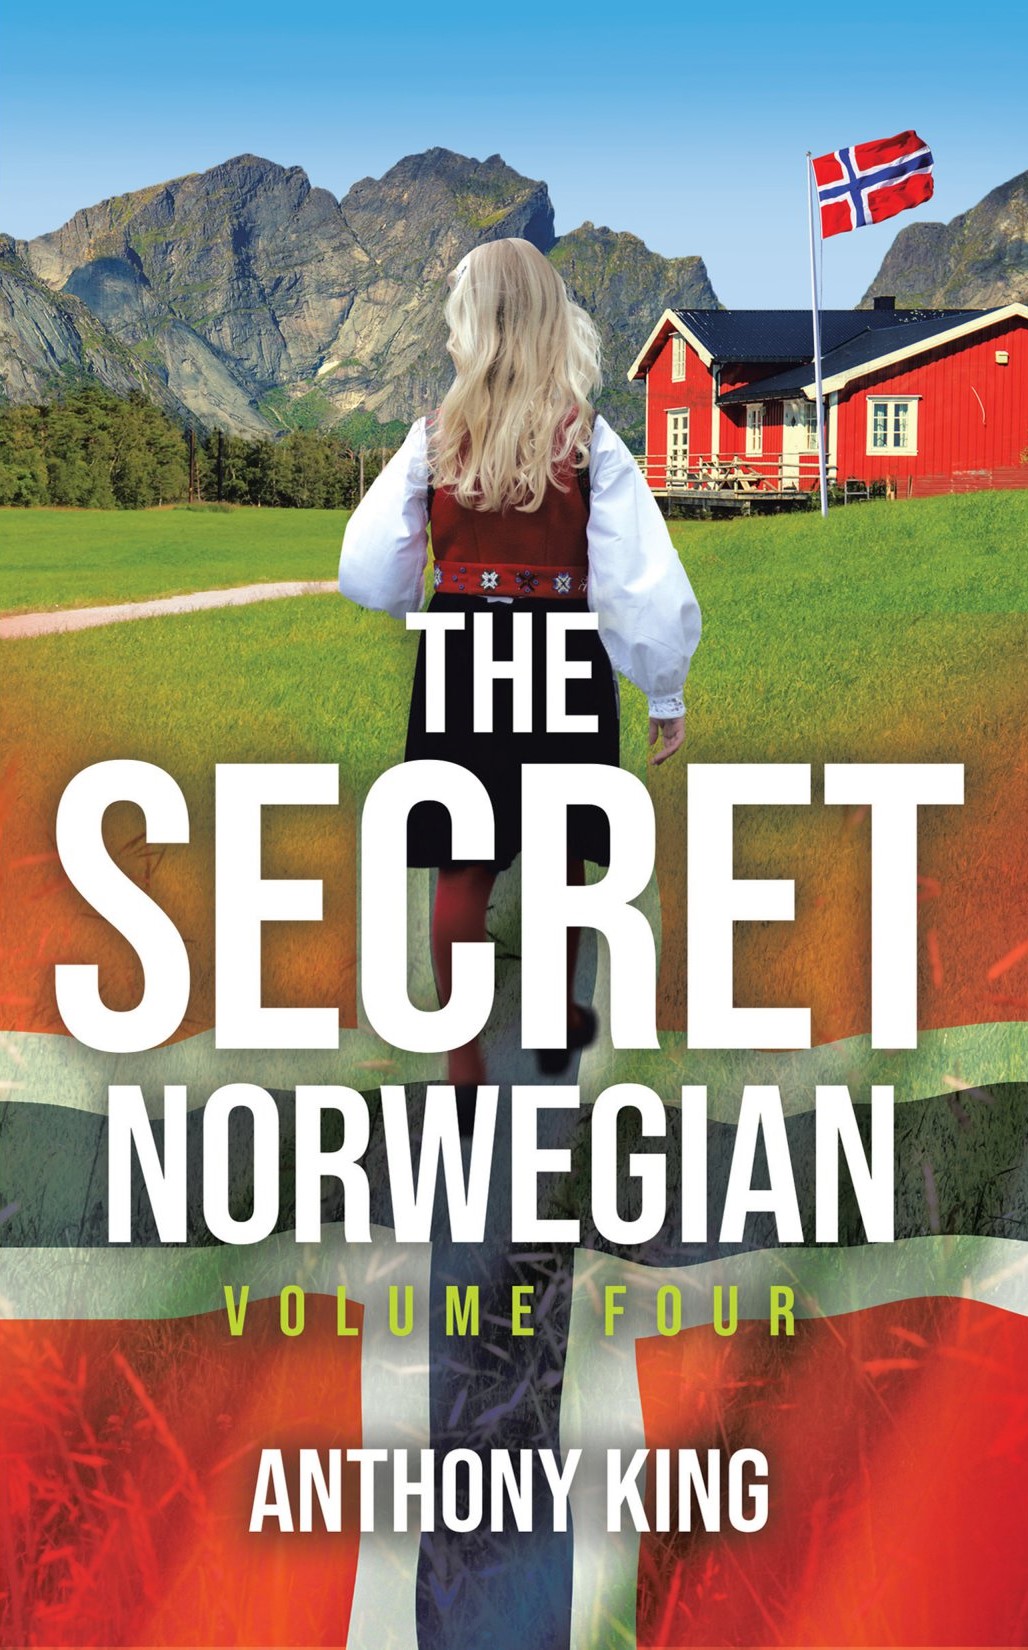 The-Secret-Norwegian-Volume-Four-front